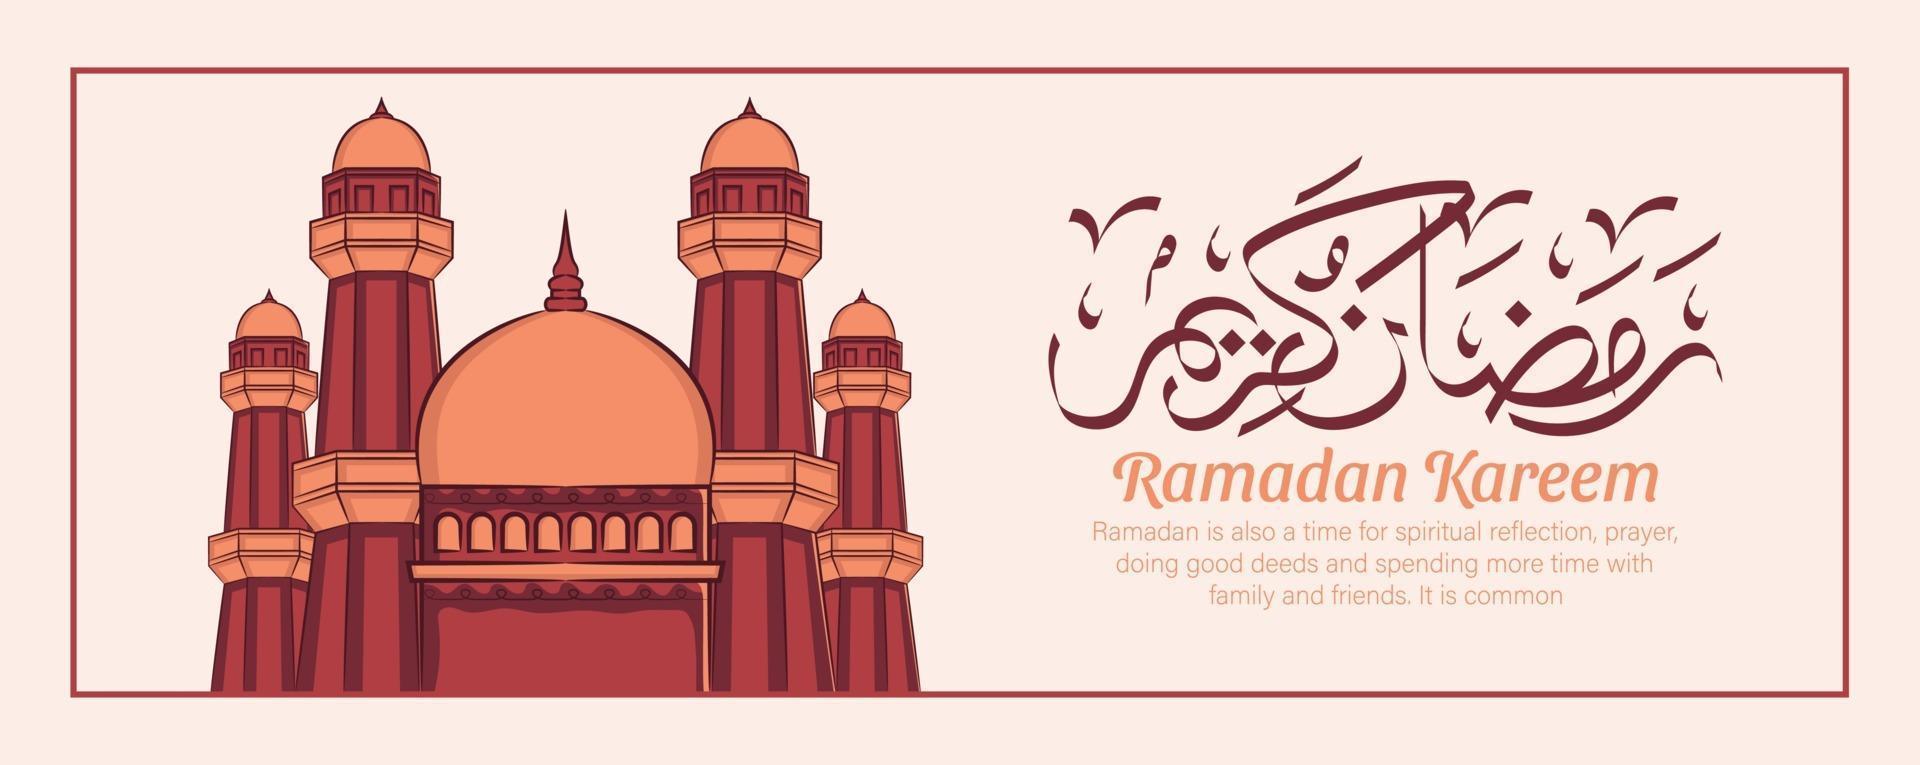 Ilustración dibujada a mano de la celebración de la fiesta iftar de Ramadán Kareem. mes sagrado islámico 1442 h. vector